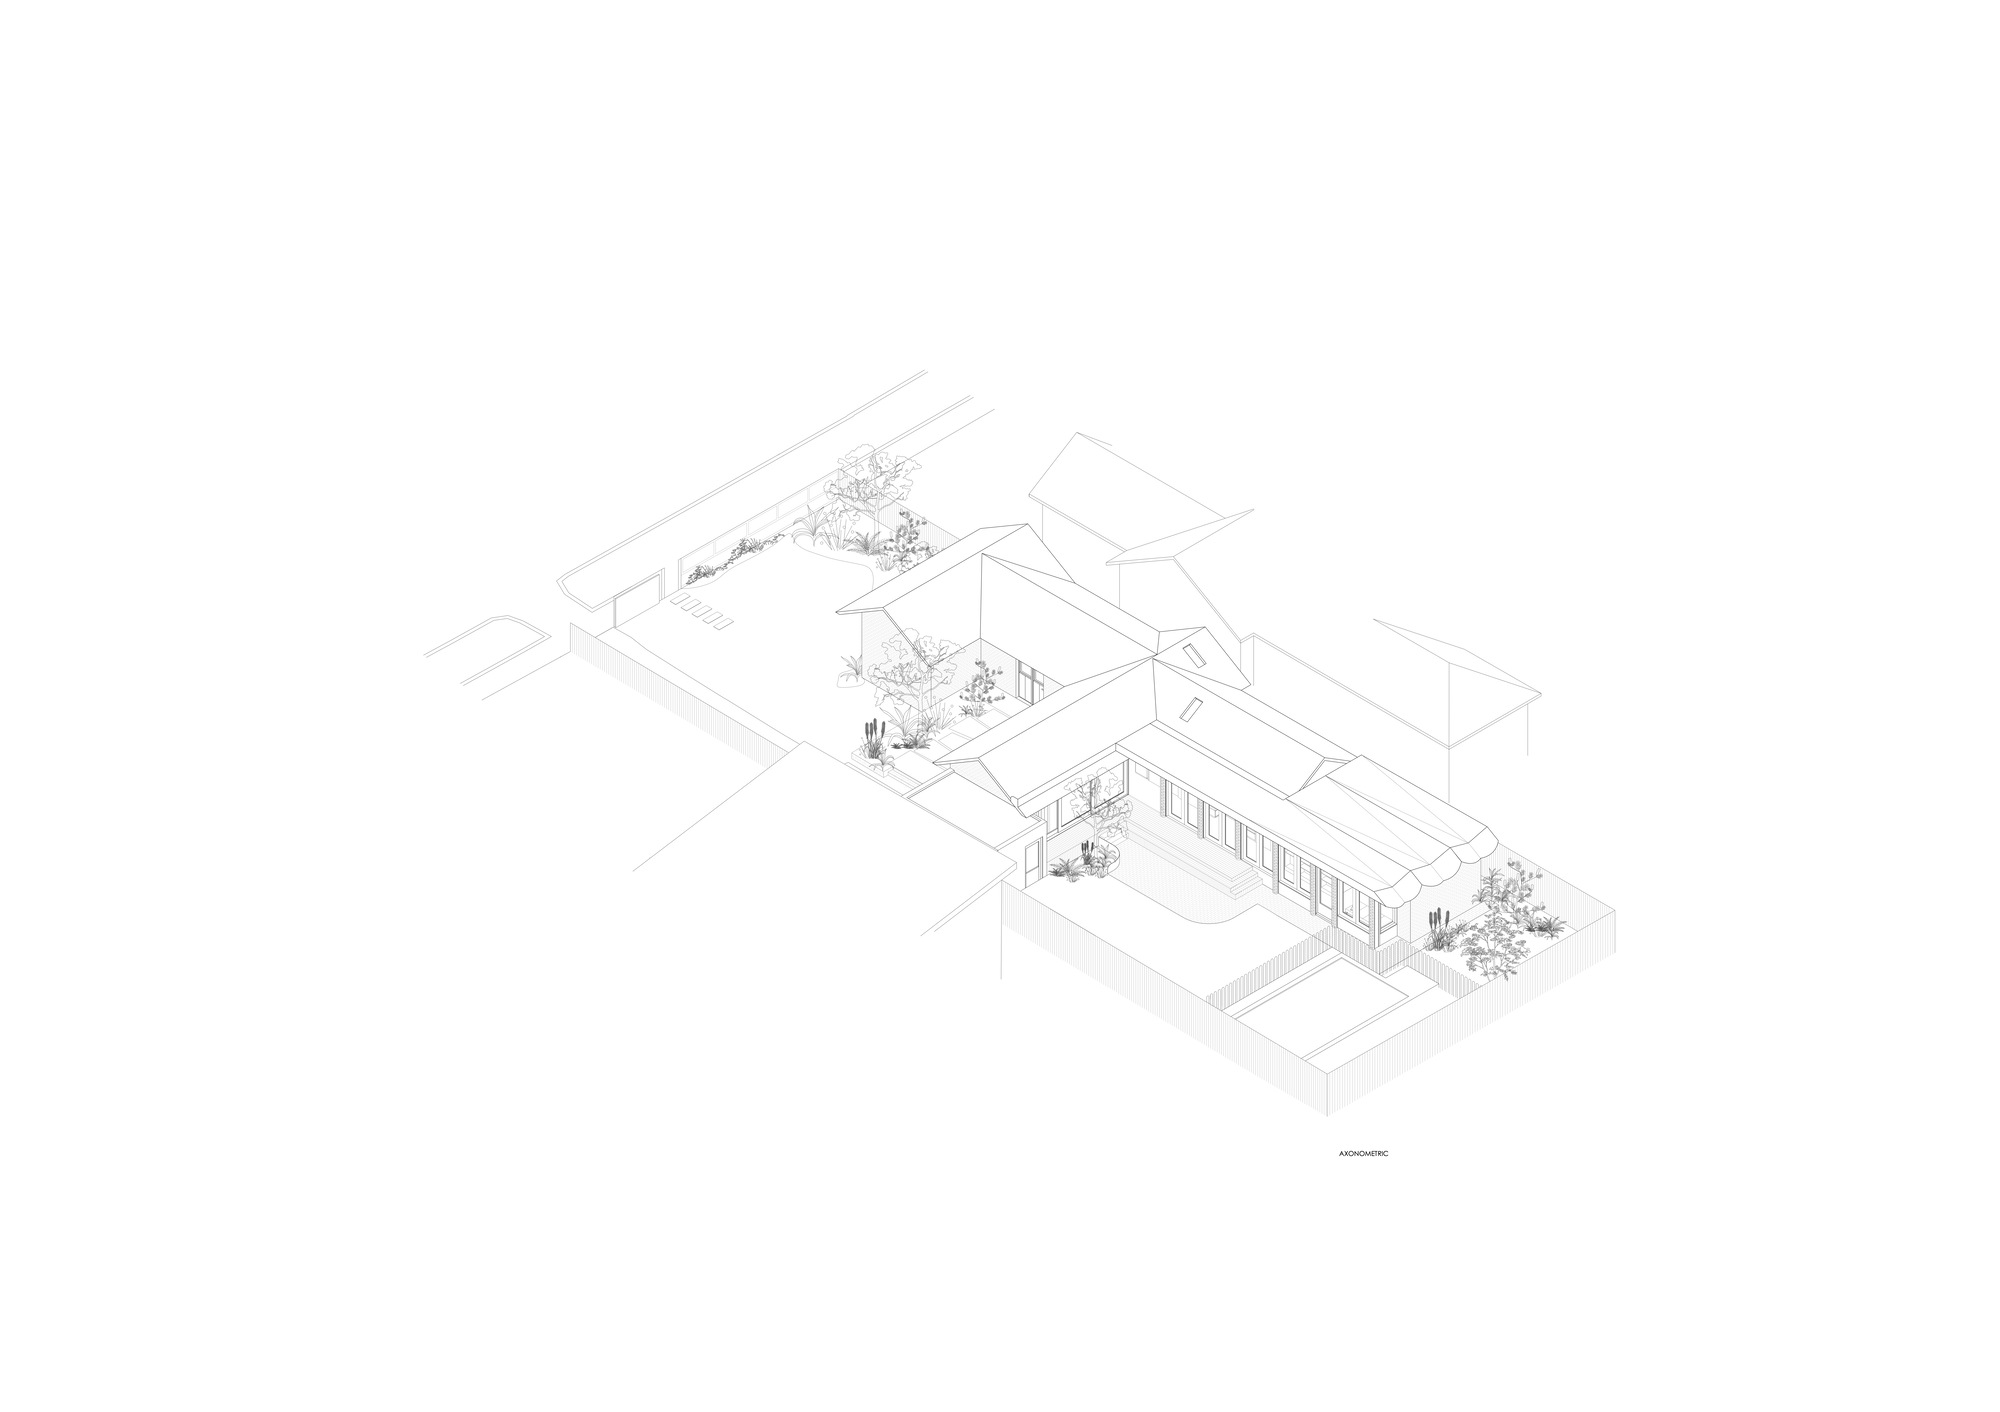 图片[4]|PONY 之家 / WOWOWA Architects|ART-Arrakis | 建筑室内设计的创新与灵感